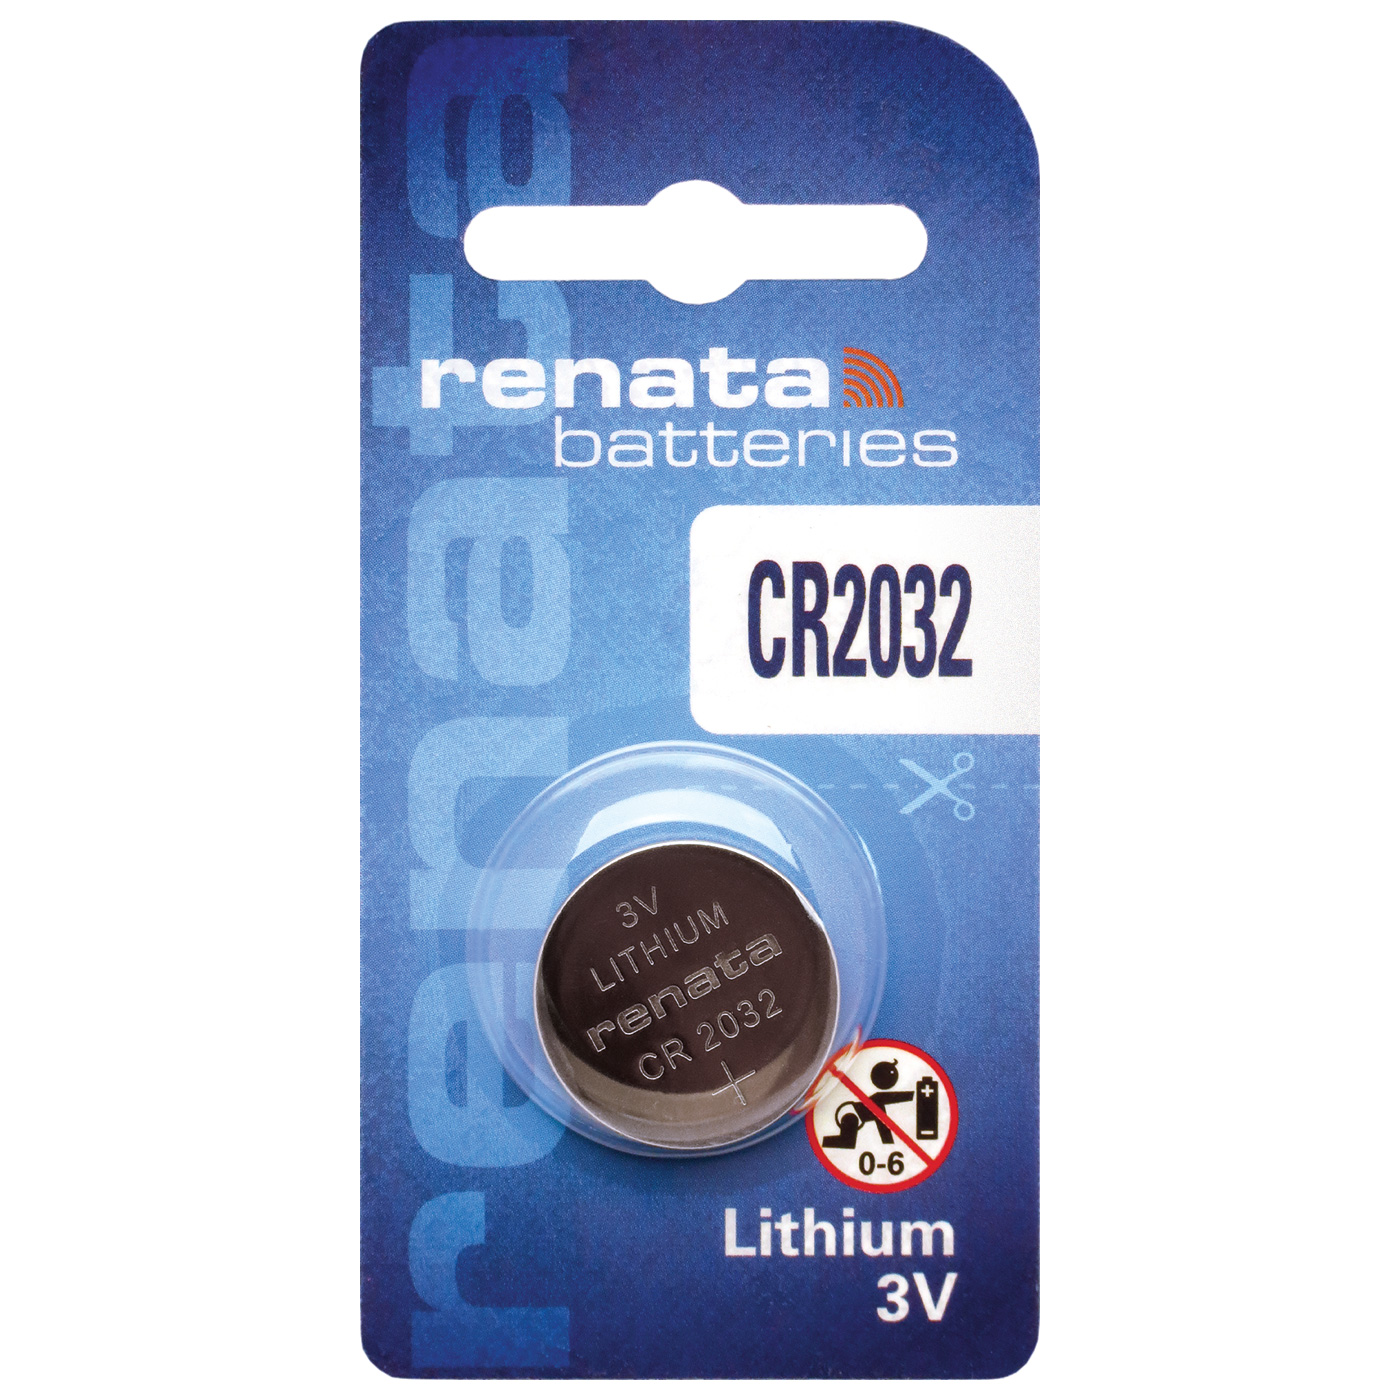 Renata CR 2032 lithium